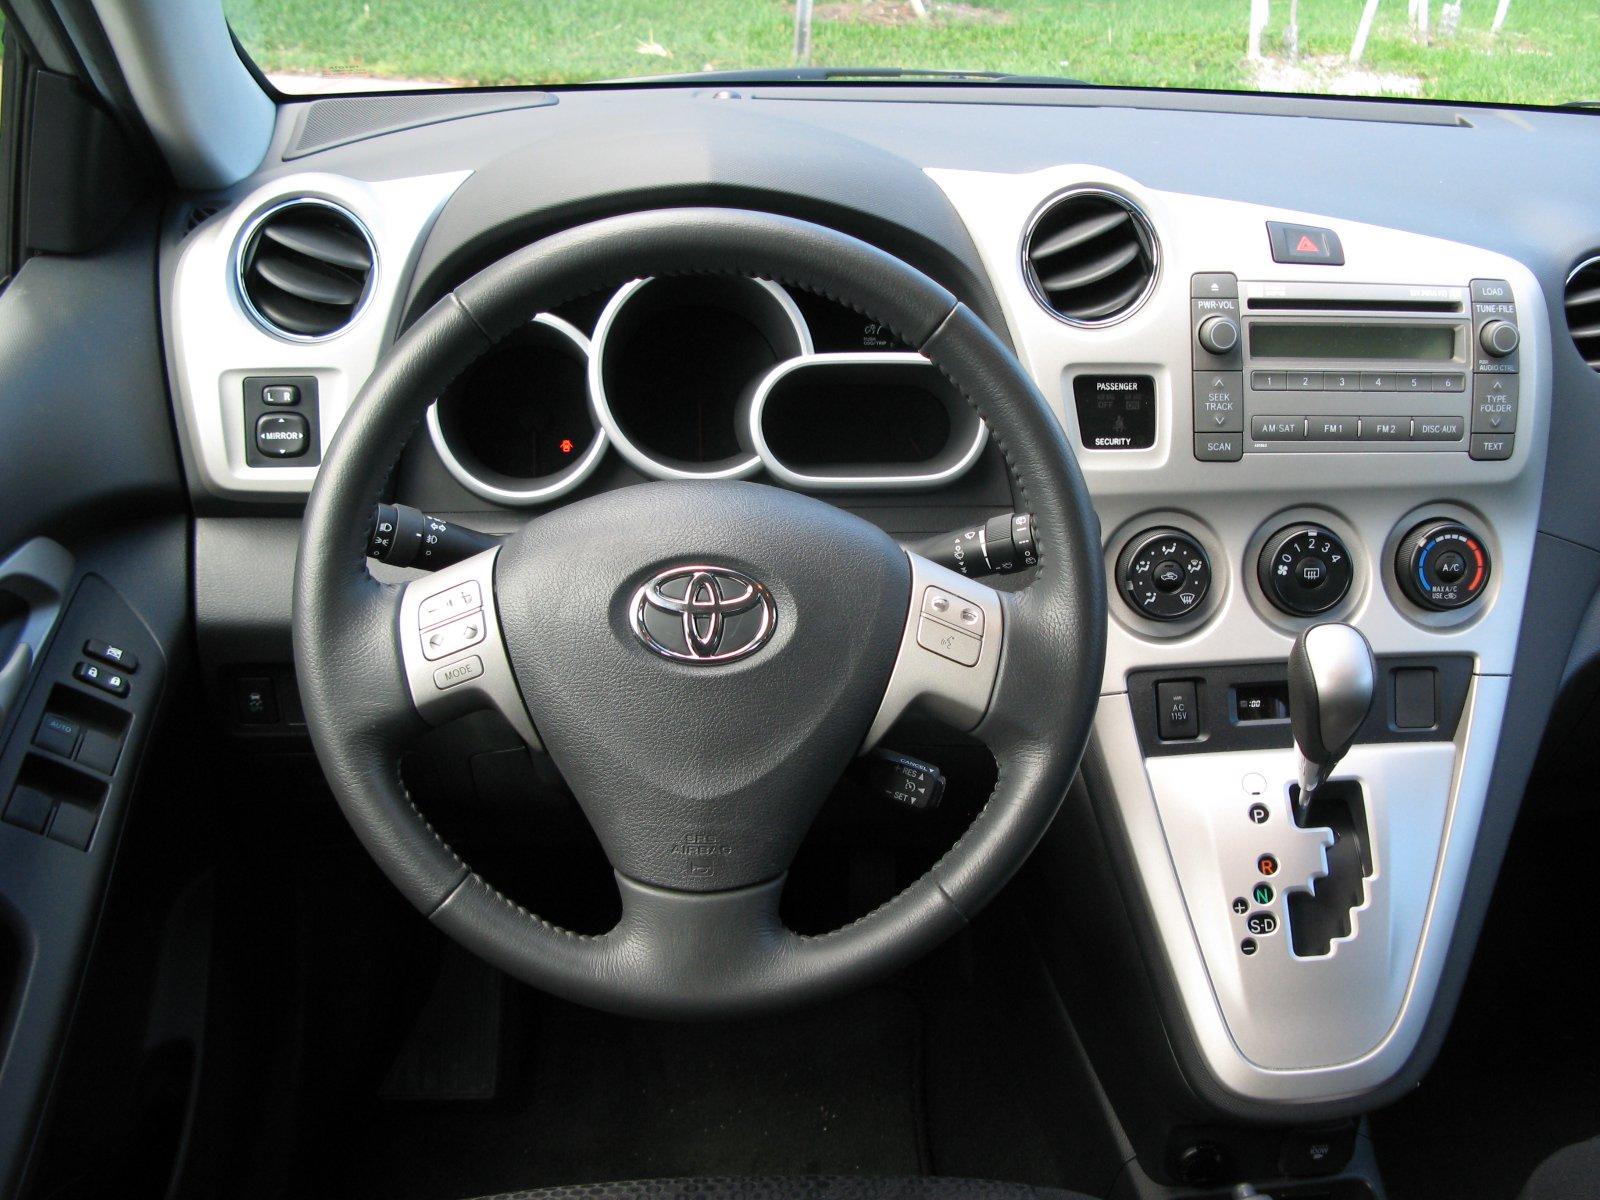 Toyota Matrix 2009 Interior , HD Wallpaper & Backgrounds